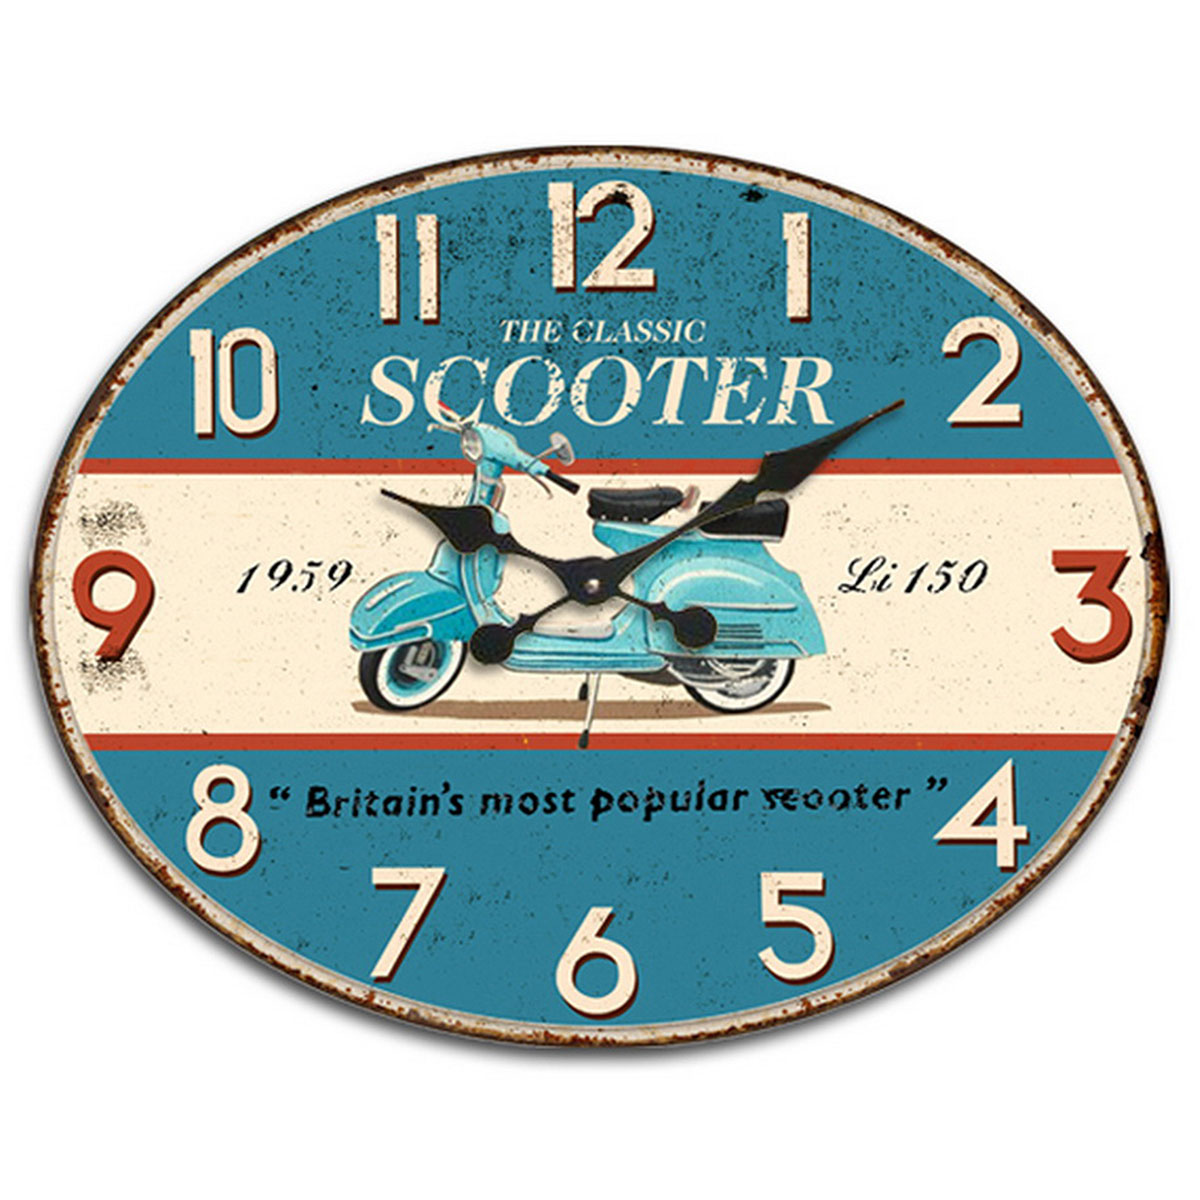 Horloge classic scooter Piaggio